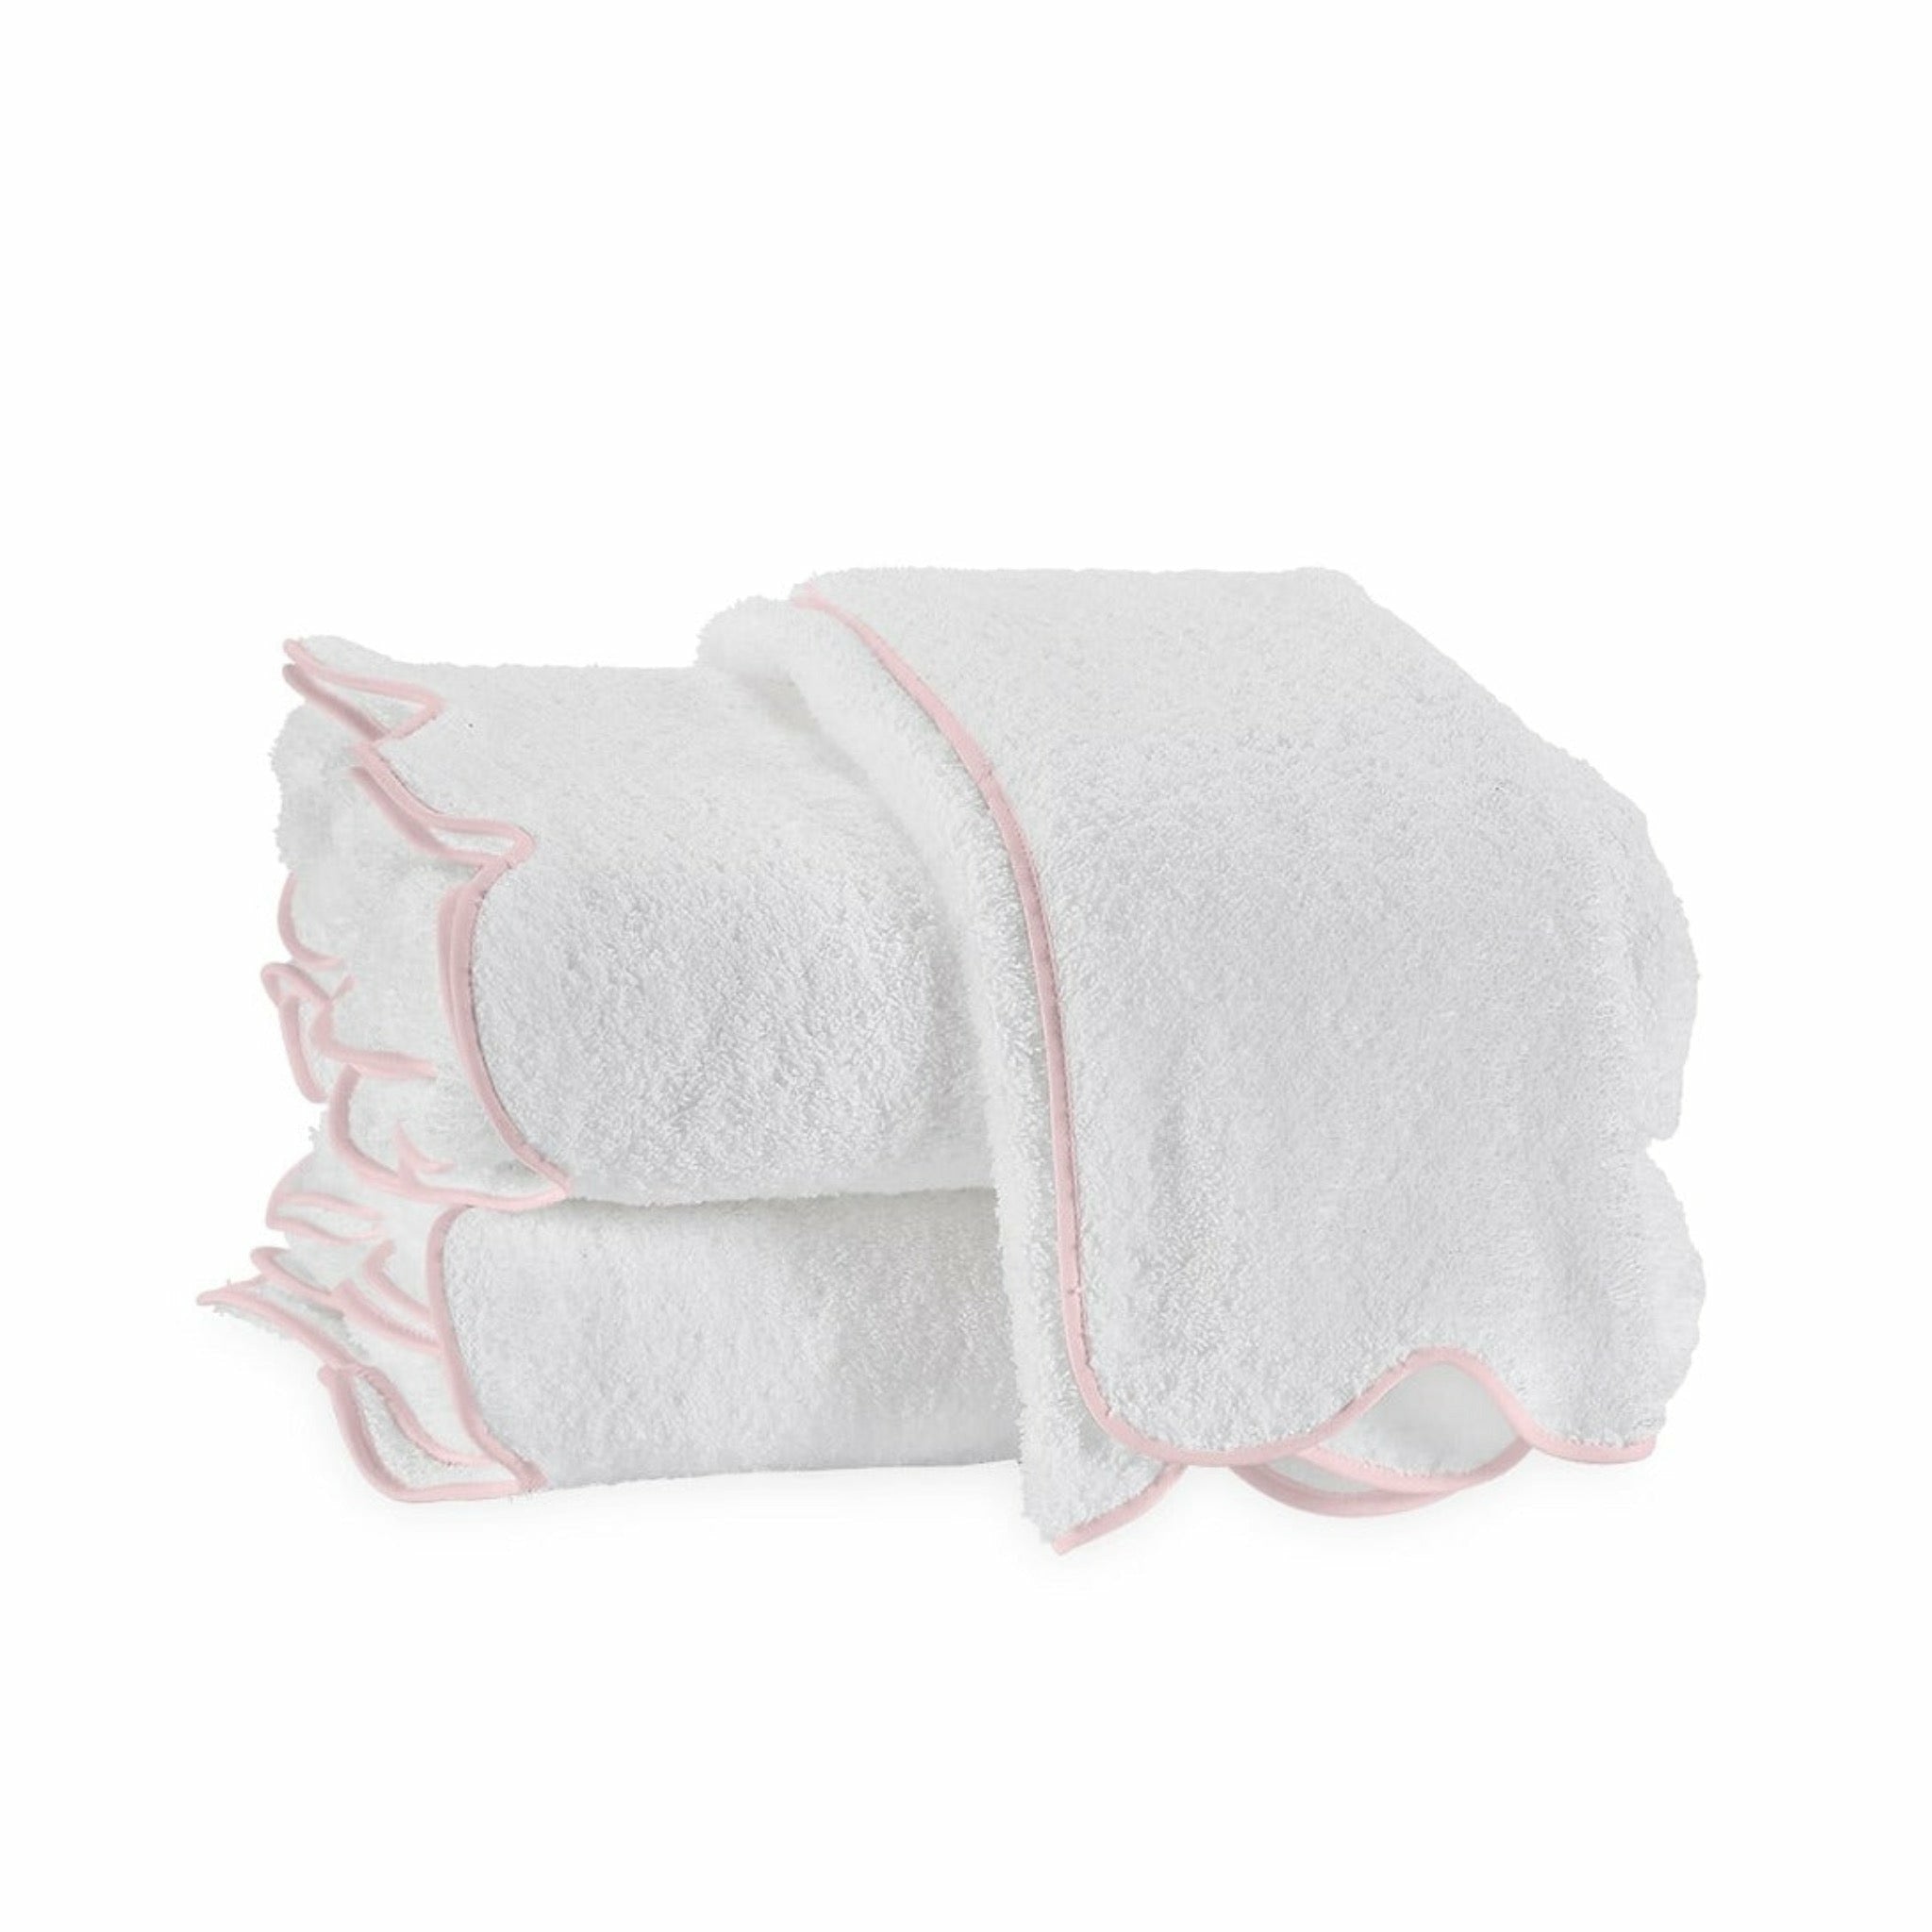 https://flandb.com/cdn/shop/products/Matouk-Cairo-Scallop-Bath-Towels-Pink_5000x.jpg?v=1660866951